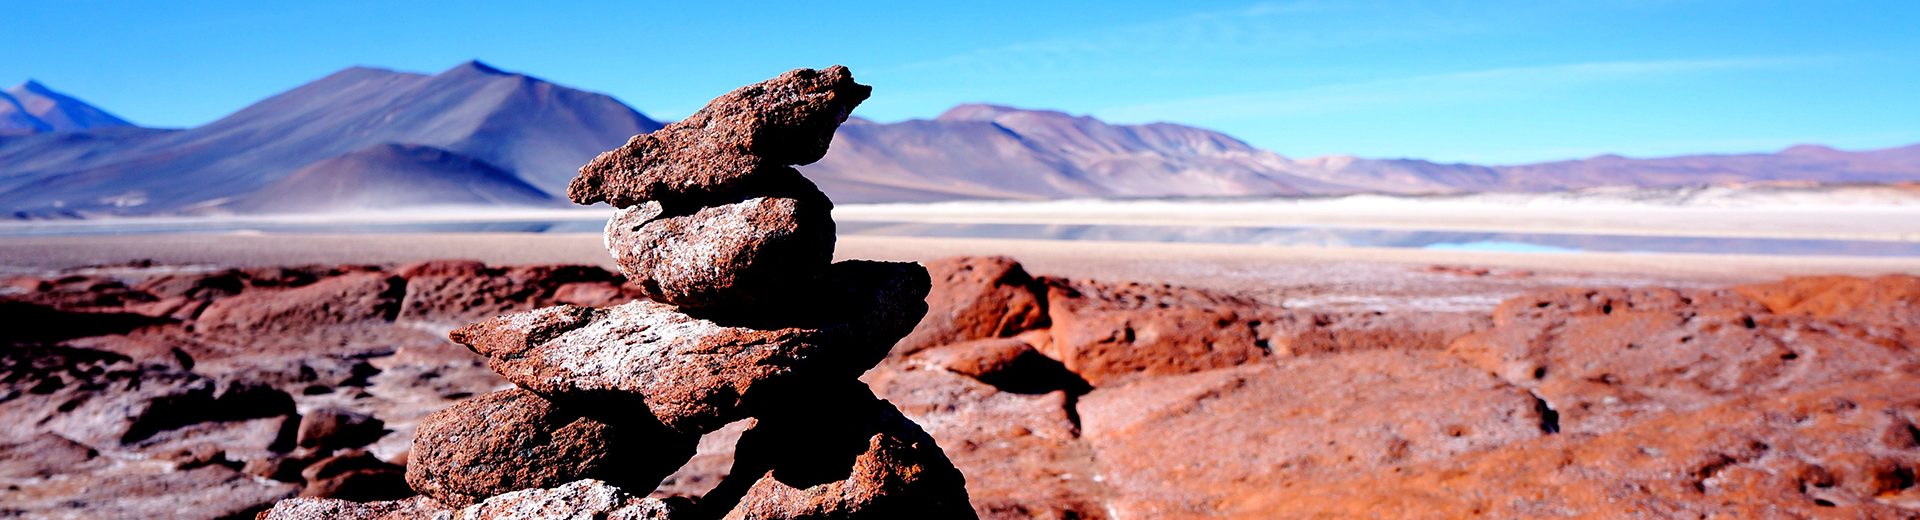 Pontos turísticos do Chile: o deserto do Atacama é um lugar esplêndido